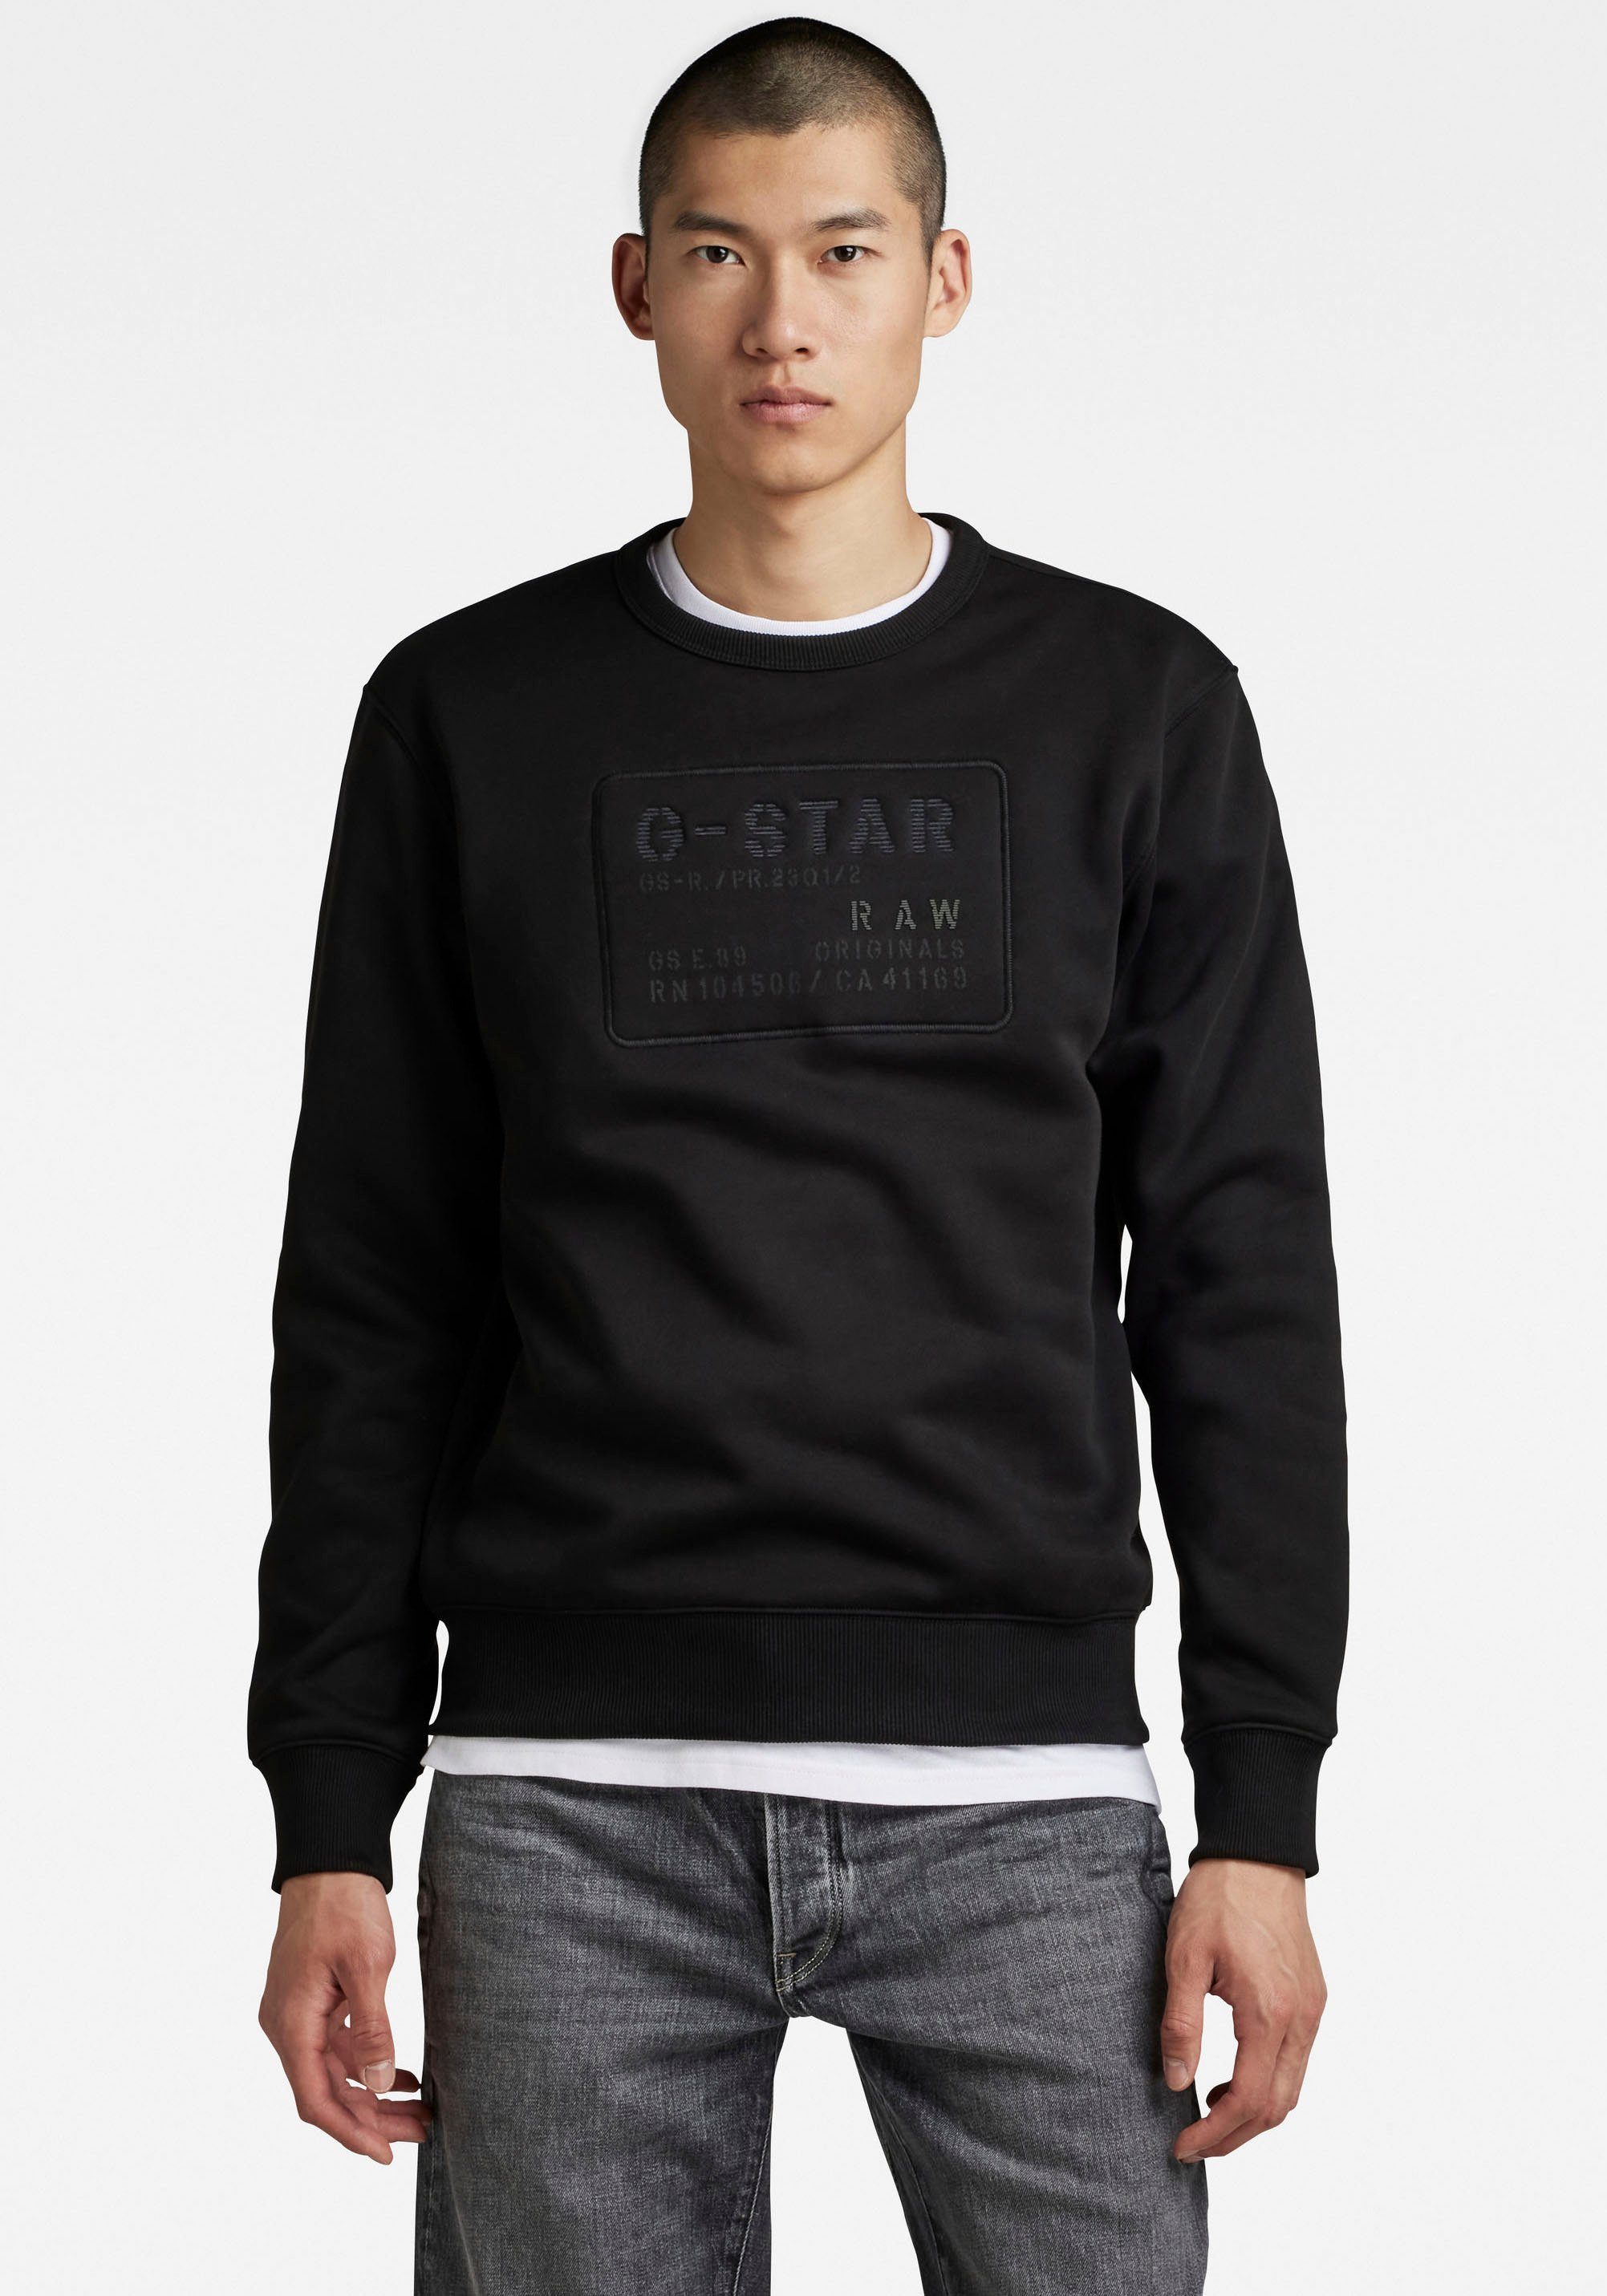 G-Star RAW Sweatshirt Sweatshirt Originals, Pflegeleichter Materialmix